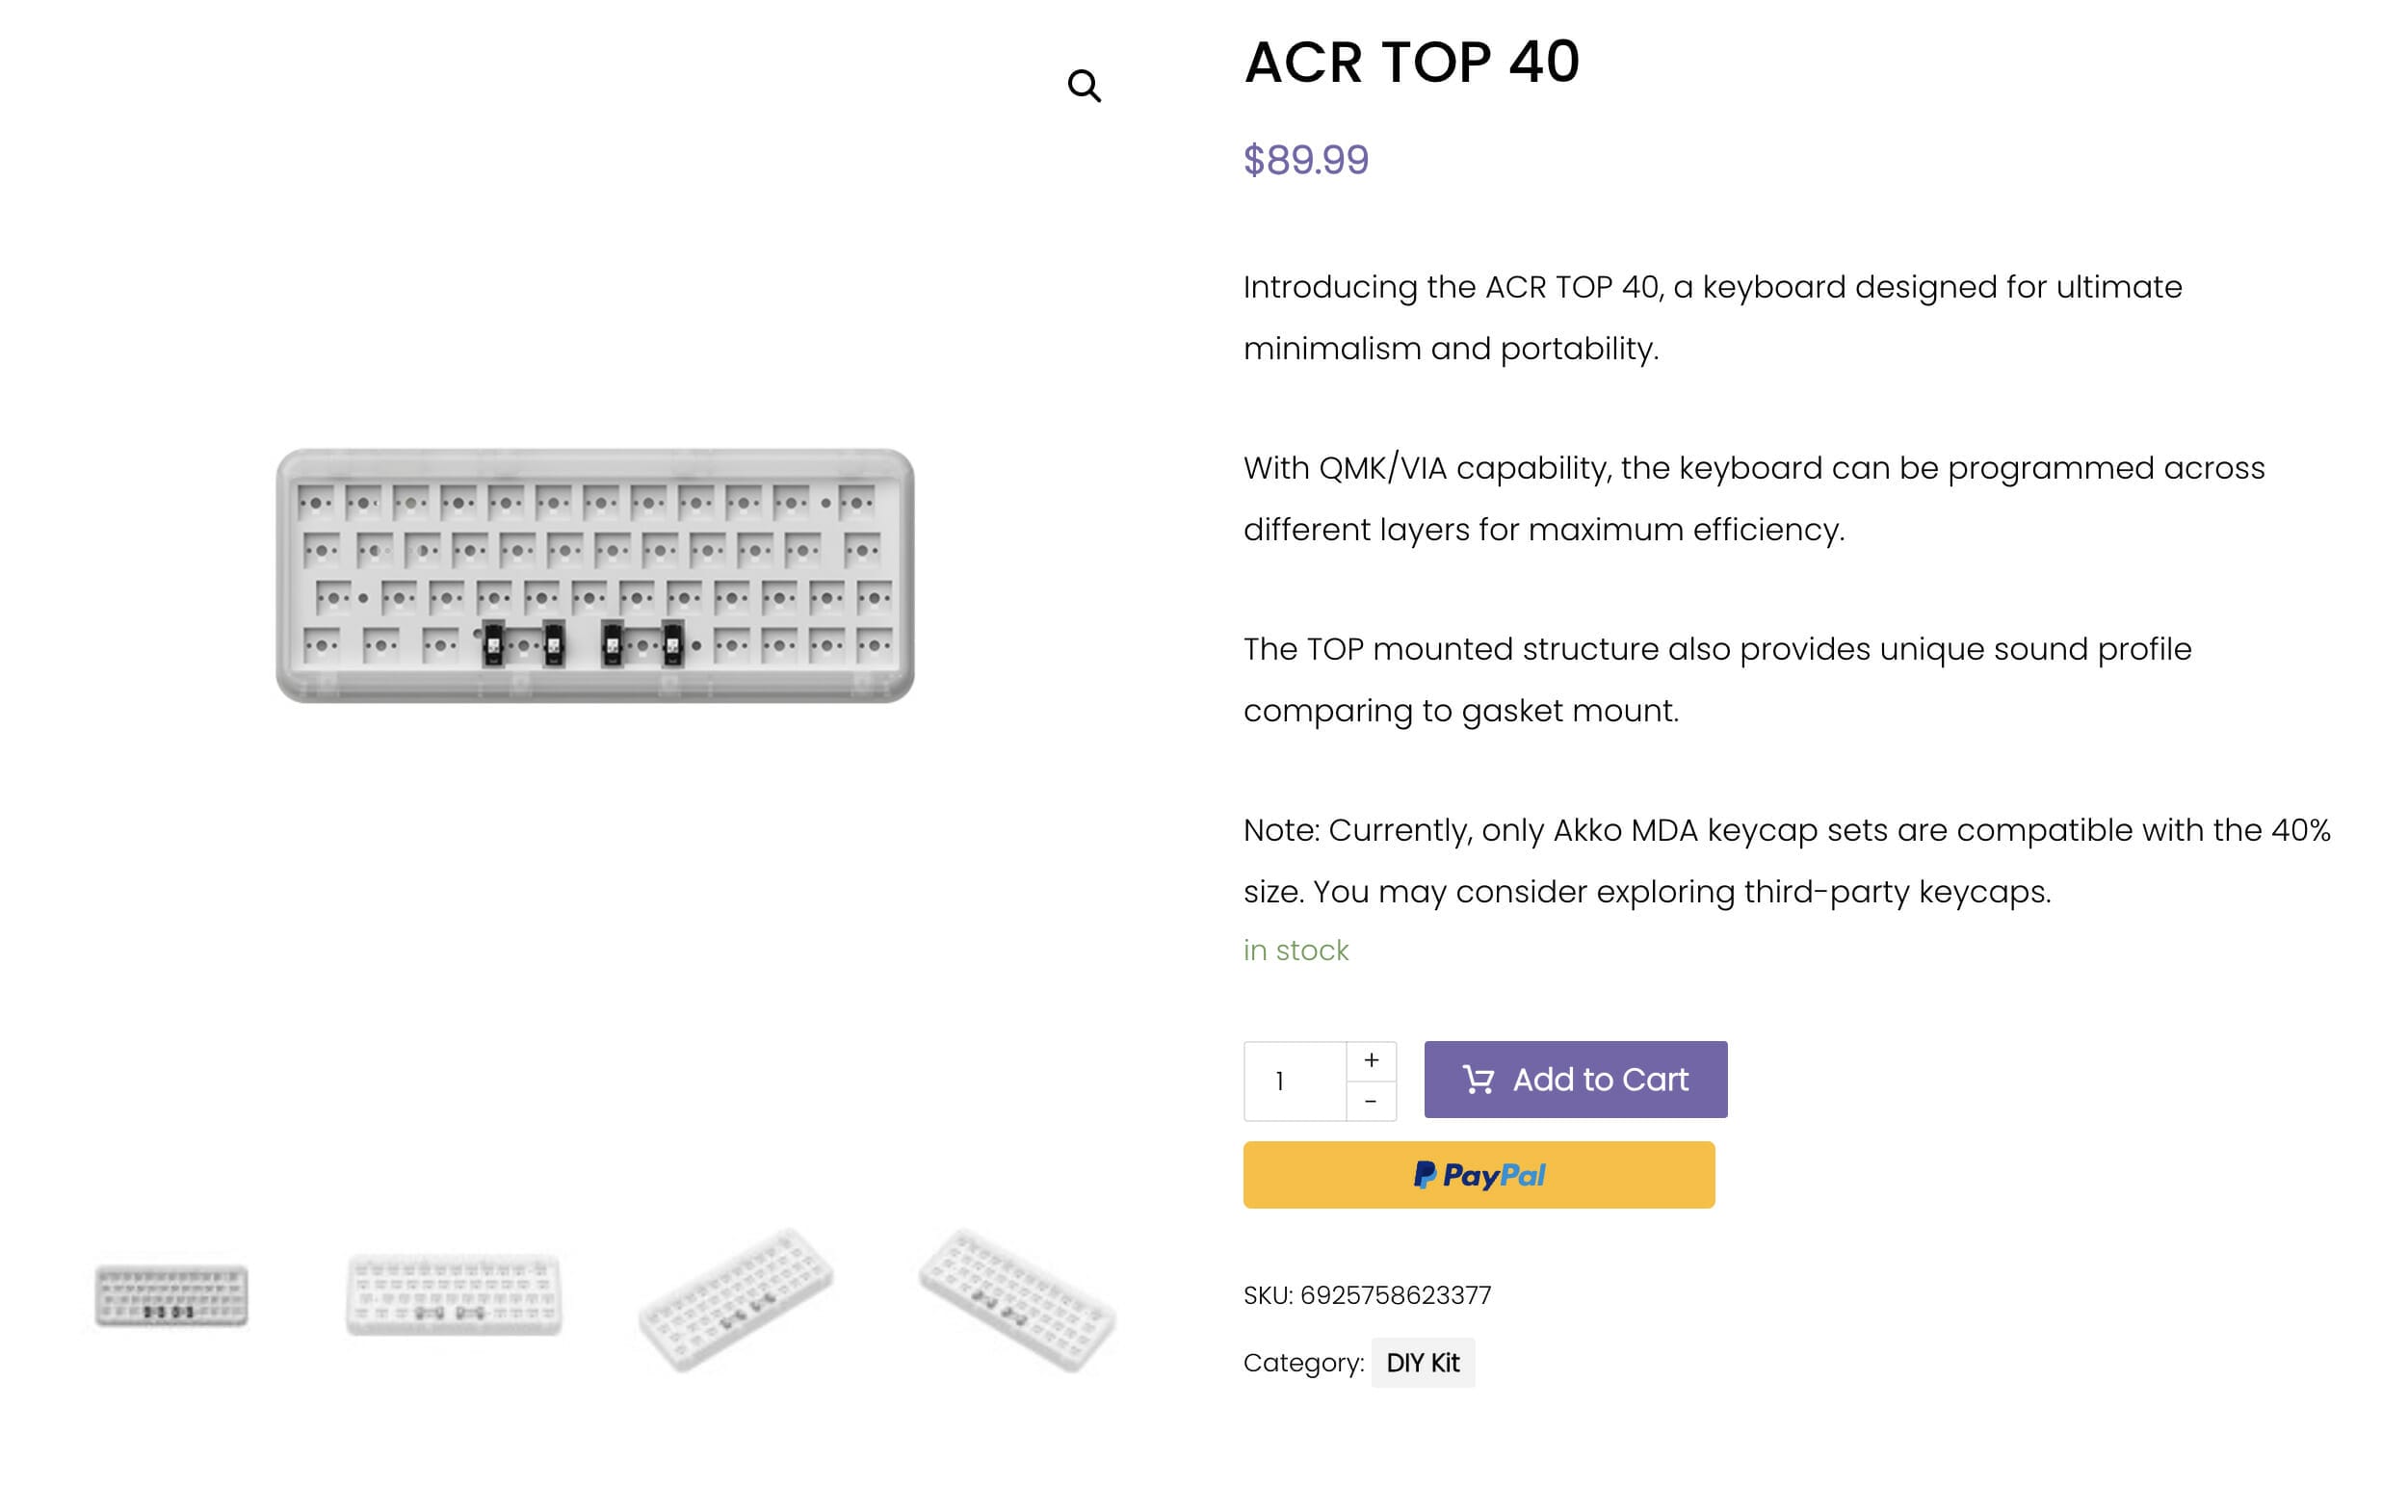 Akkoから新作40％レイアウトキーボード「ACR TOP 40」が登場